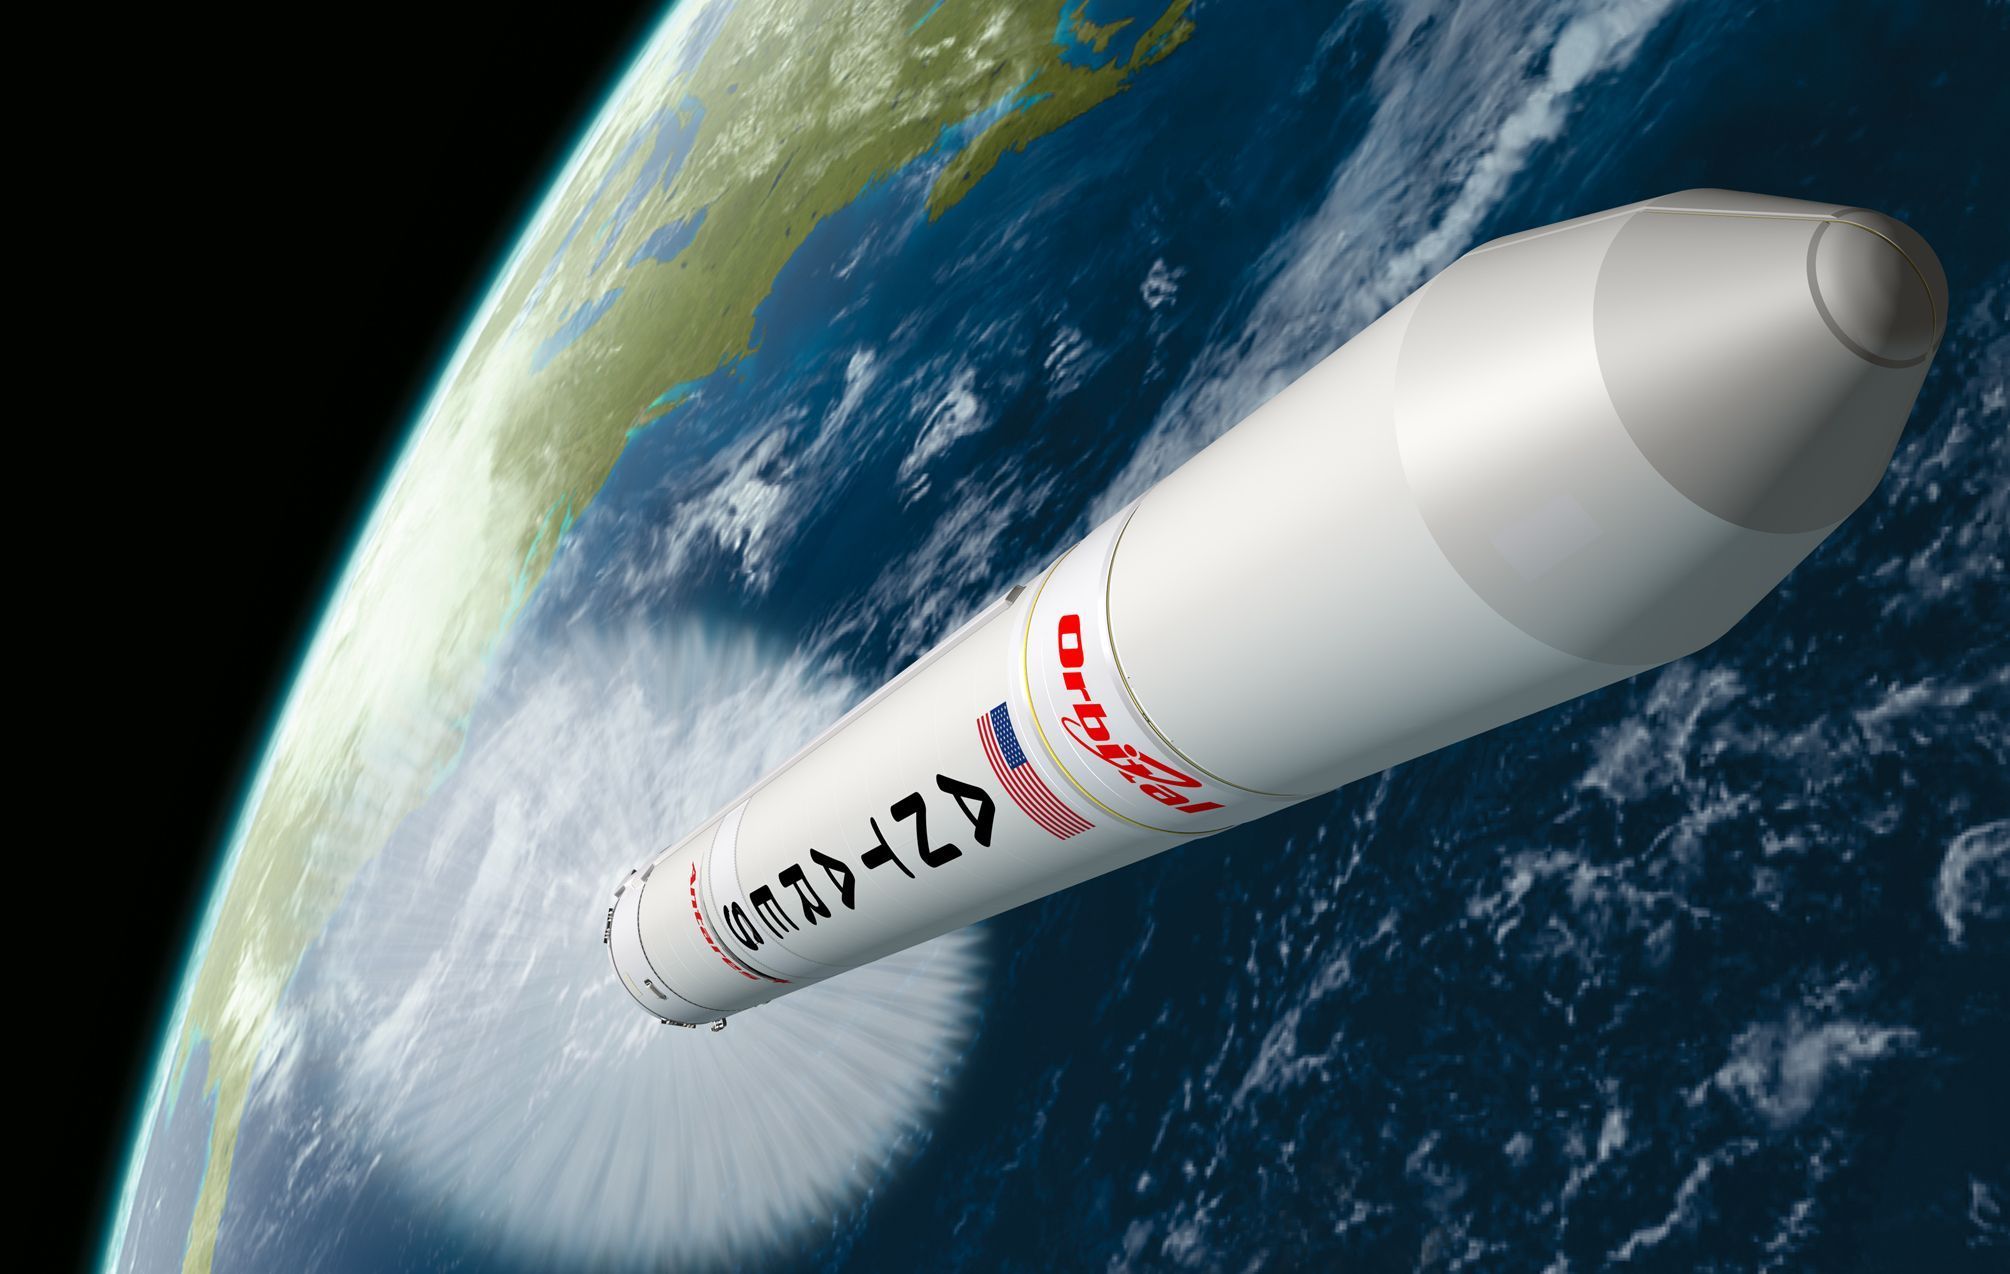 Raketa Antares společnosti Orbital Science Corporation